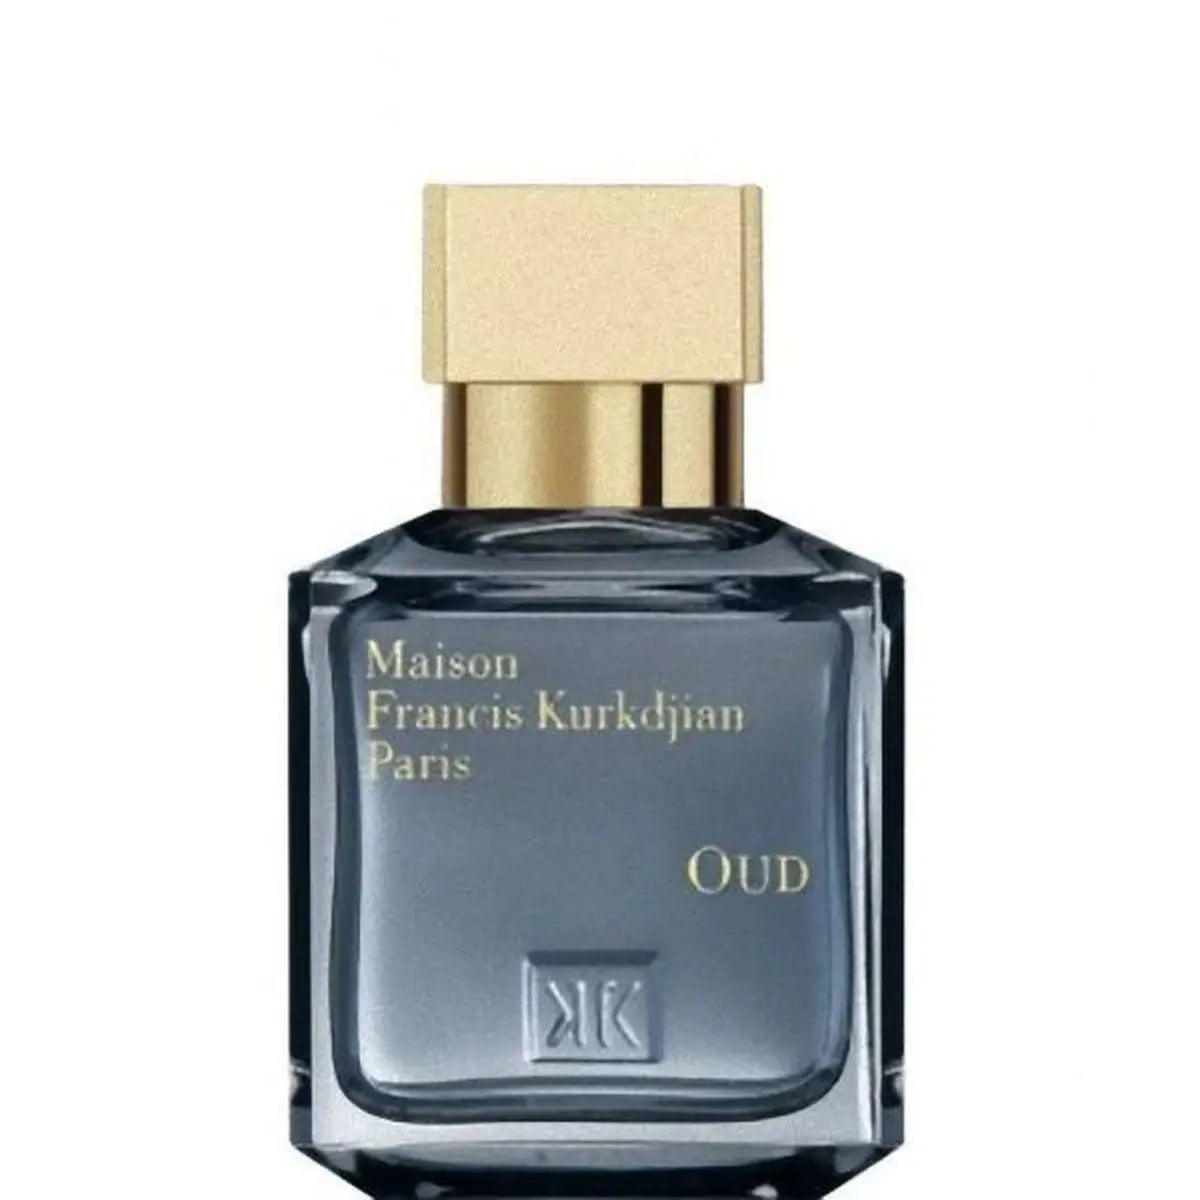 Francis kurkdjian Oud Eau de Parfum - 70 ml